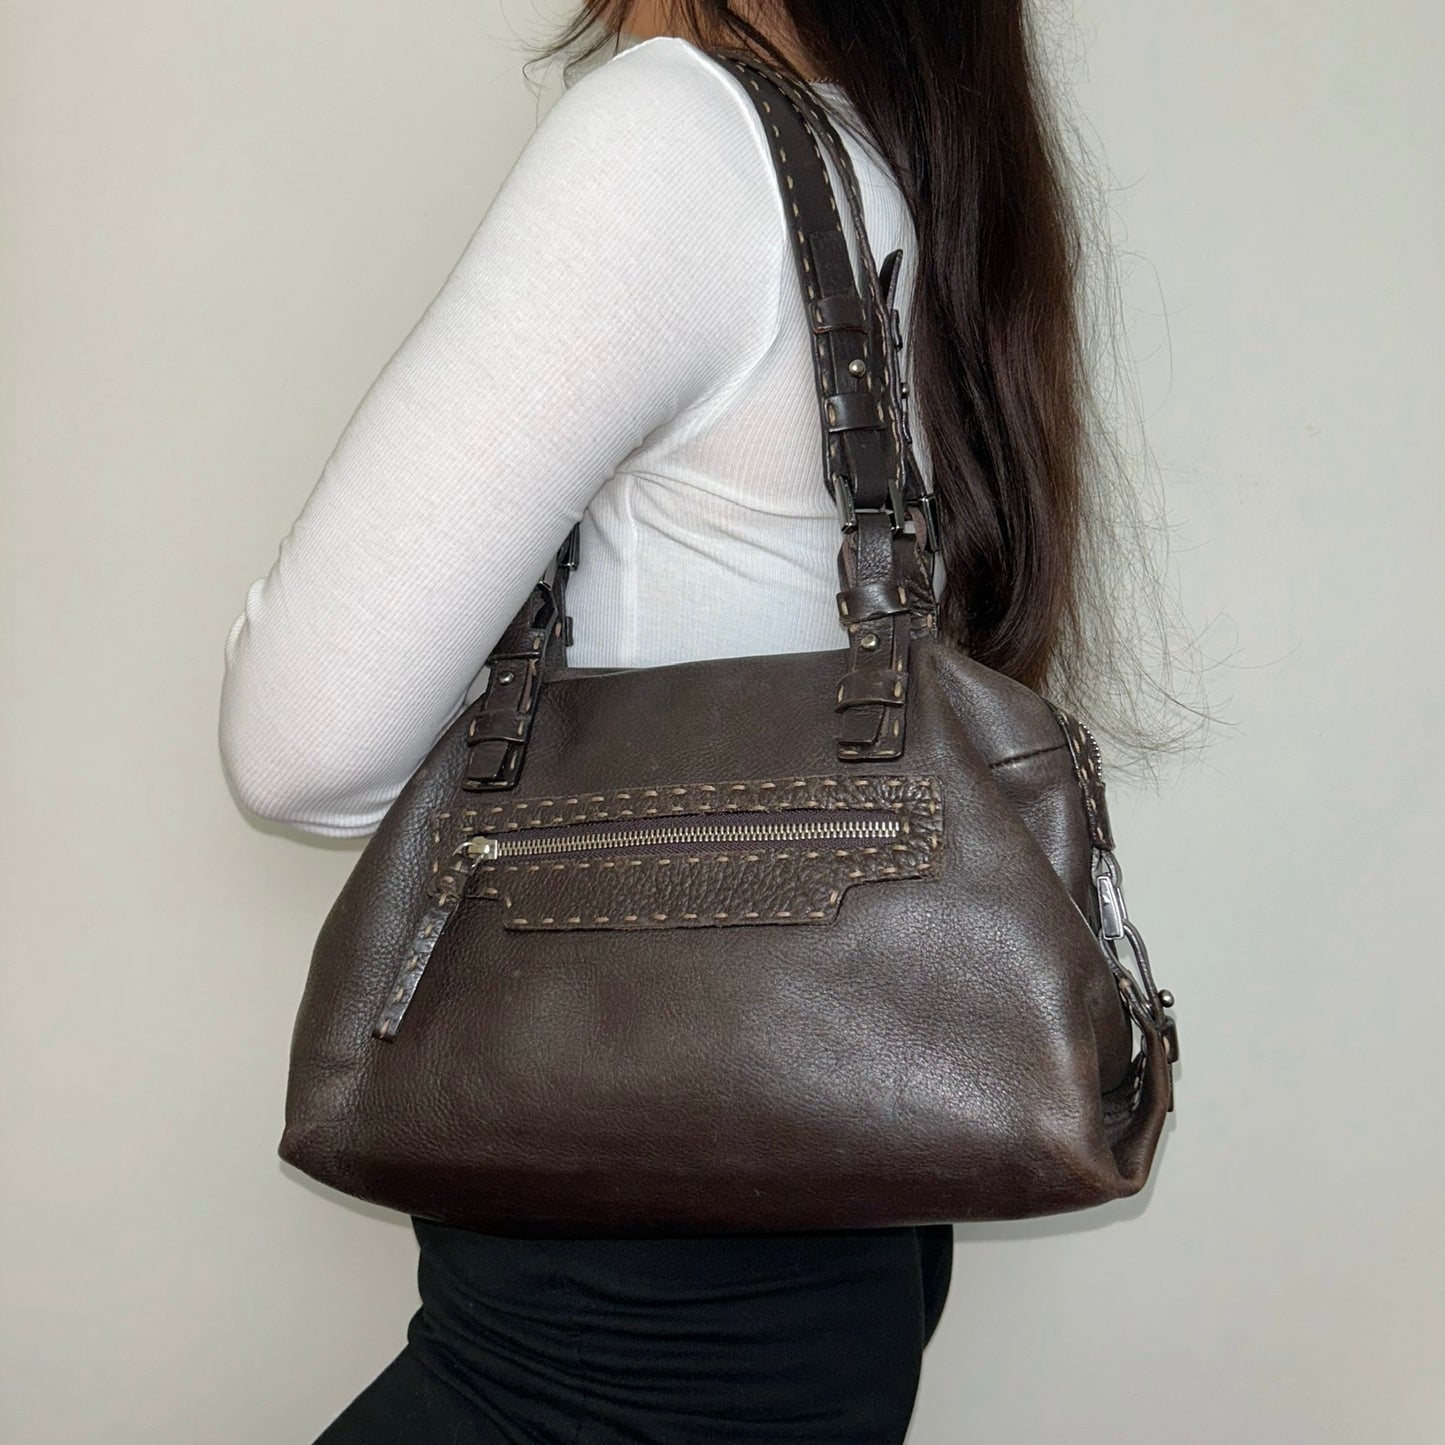 brown leather shoulder bag shown on a models shoulder